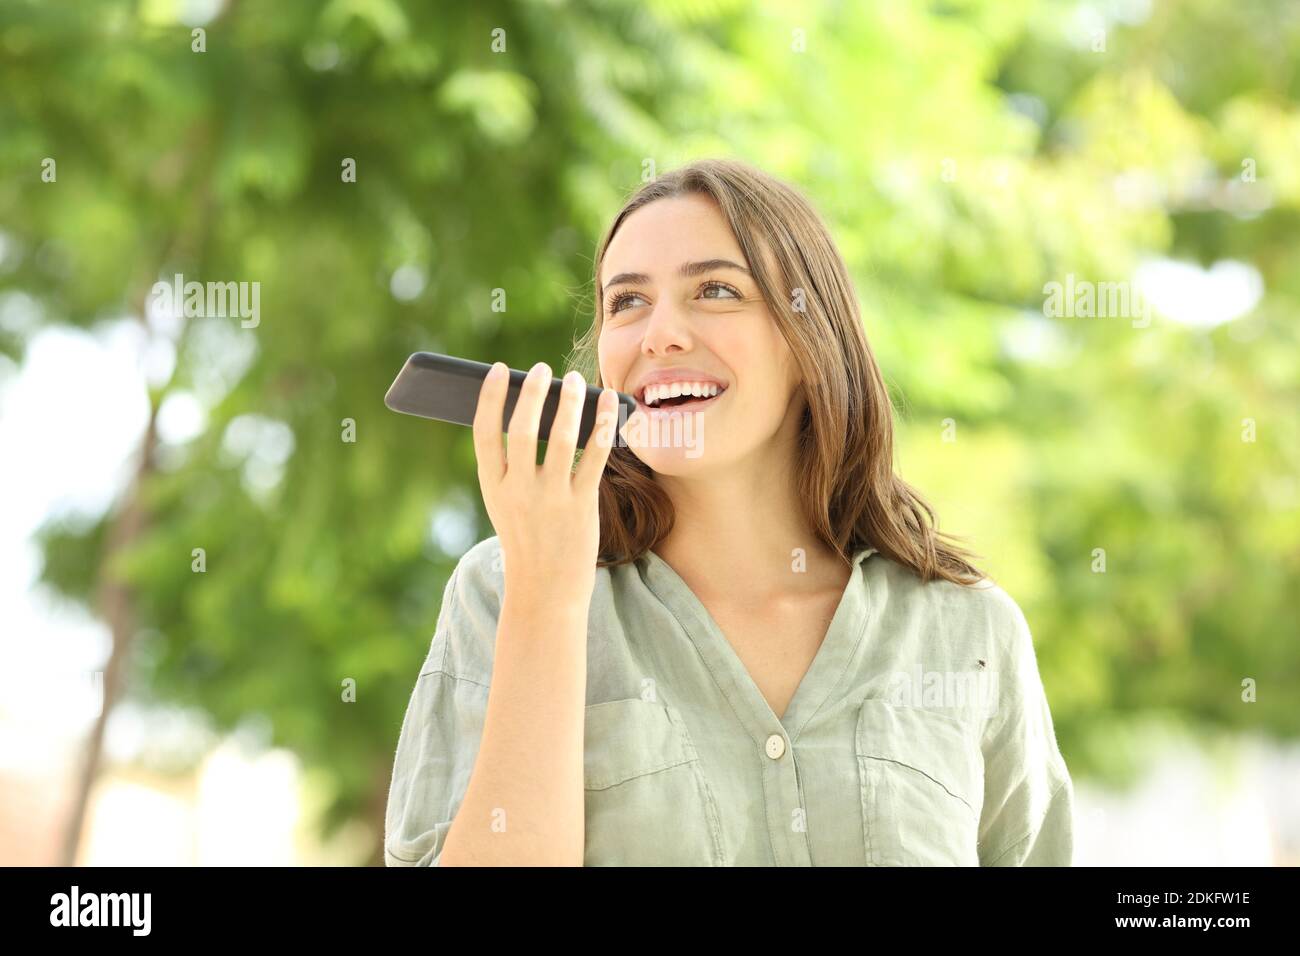 Glückliche Frau, die Audionachricht auf dem Smartphone aufzeichnet, das herkommt Ein Park Stockfoto